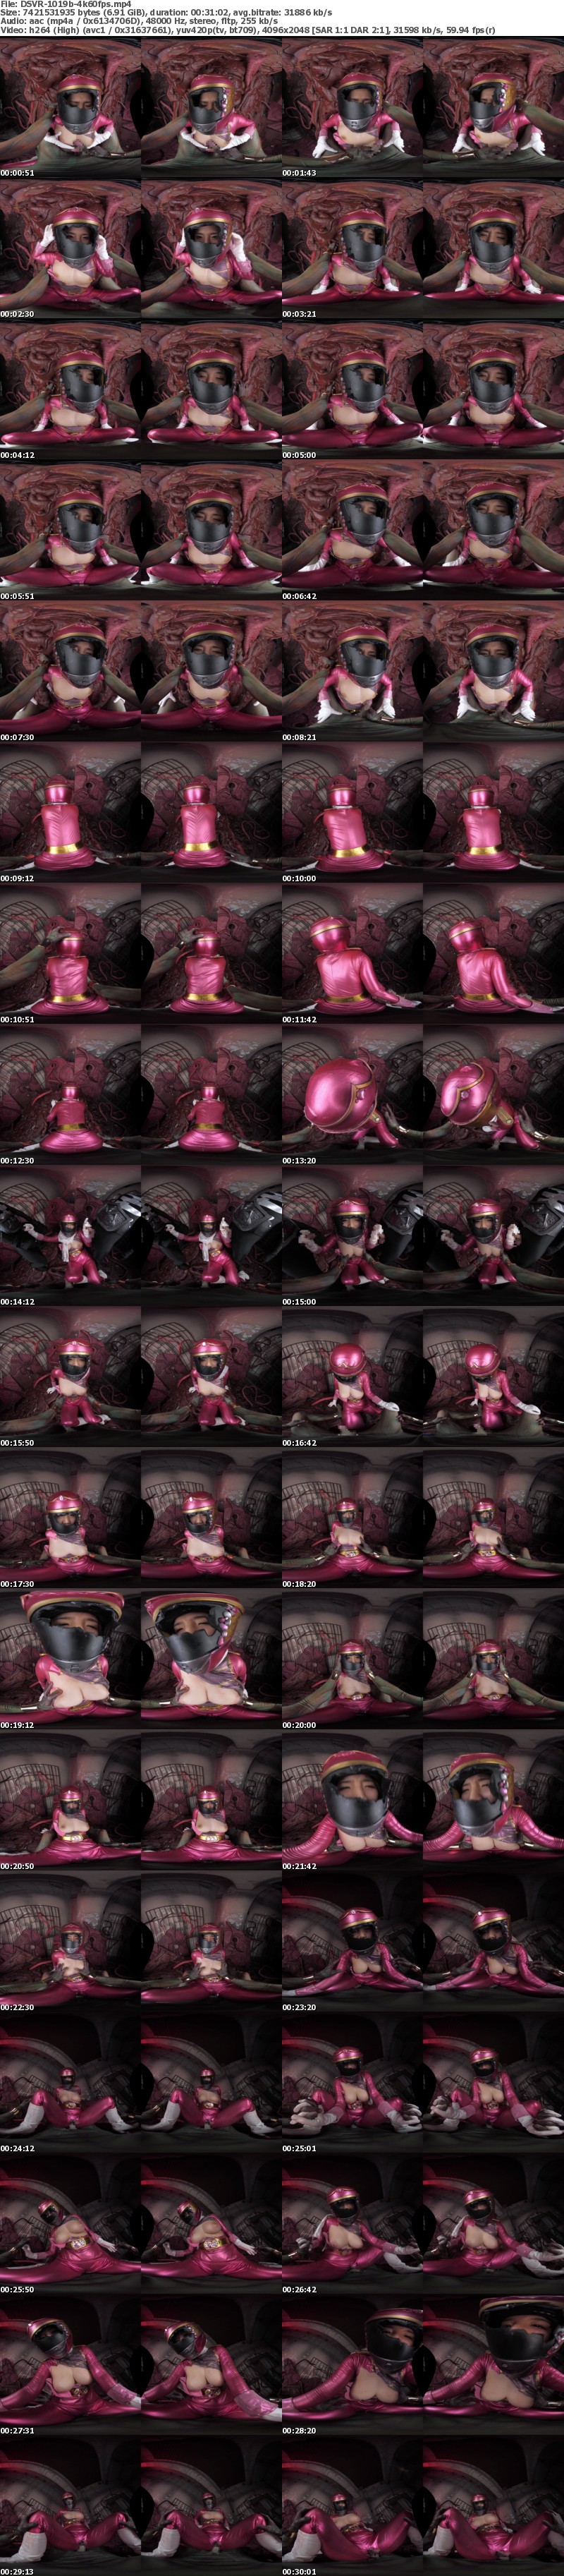 [VR] 3DSVR-1019 【VR】ピンクレンジャーを性的拷問で中出しレ○プ 魔石戦隊キラメキジャー